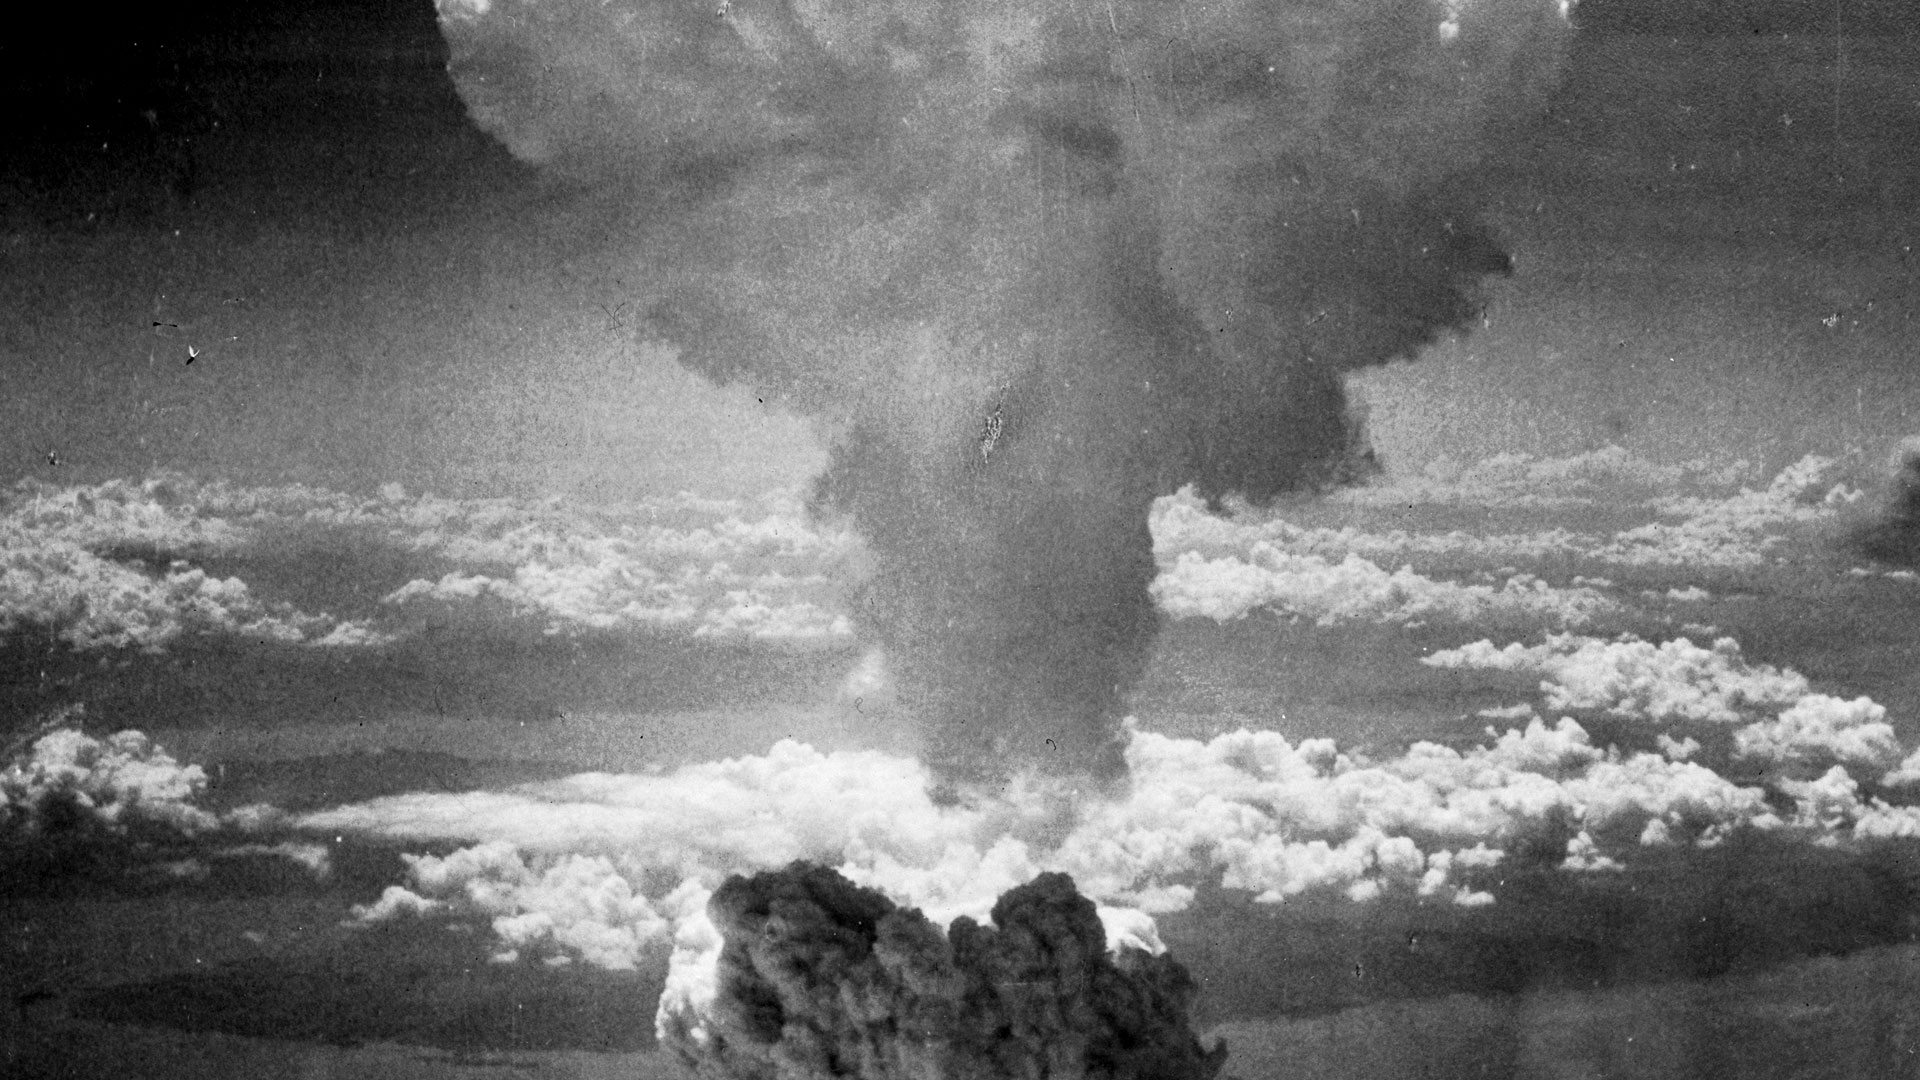 Ein Inferno haben die Atombombenabwürfe in Japan im August 1945 hinterlassen. Das Bild zeigt den Abwurf über der japanischen Stadt Nagasaki.